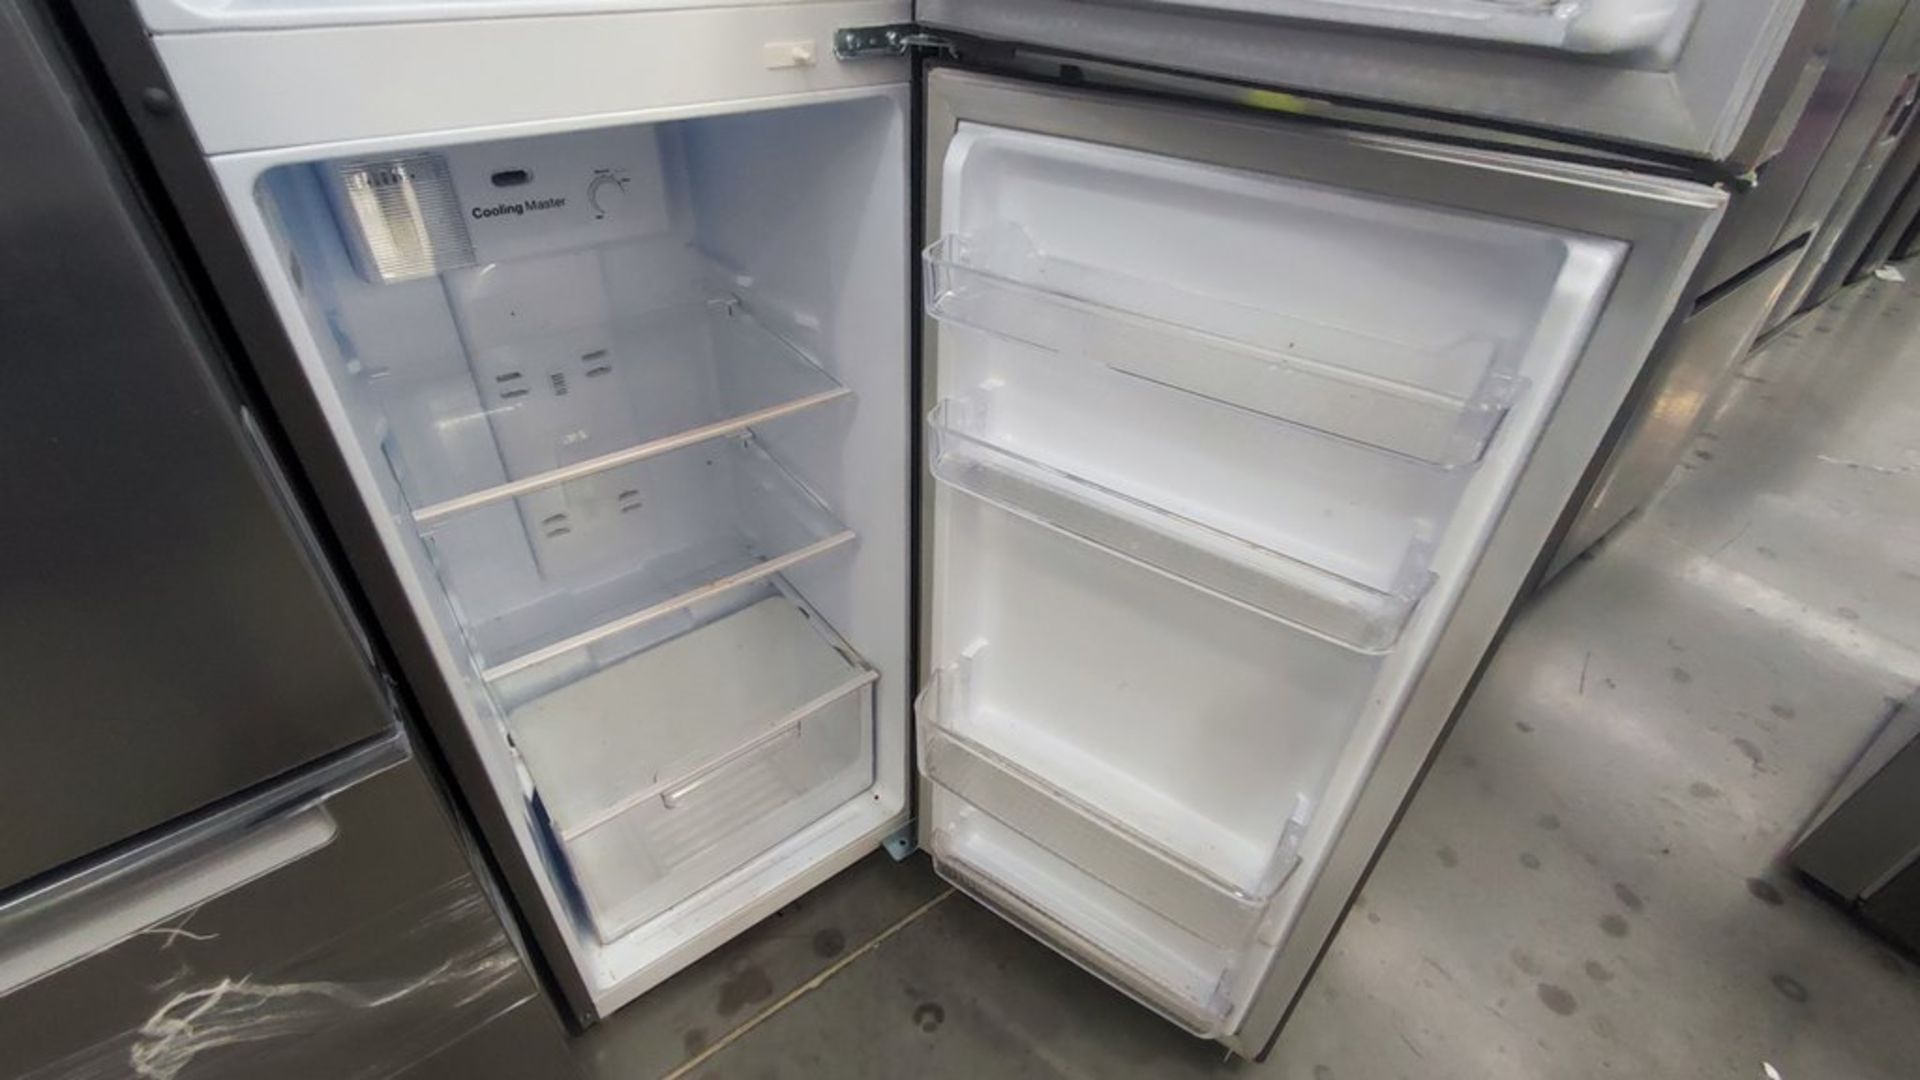 Lote de 2 Refrigeradores contiene: 1 Refrigerador Marca Hisense Modelo BCYNY, No de serie 1B0205Z00 - Image 5 of 11